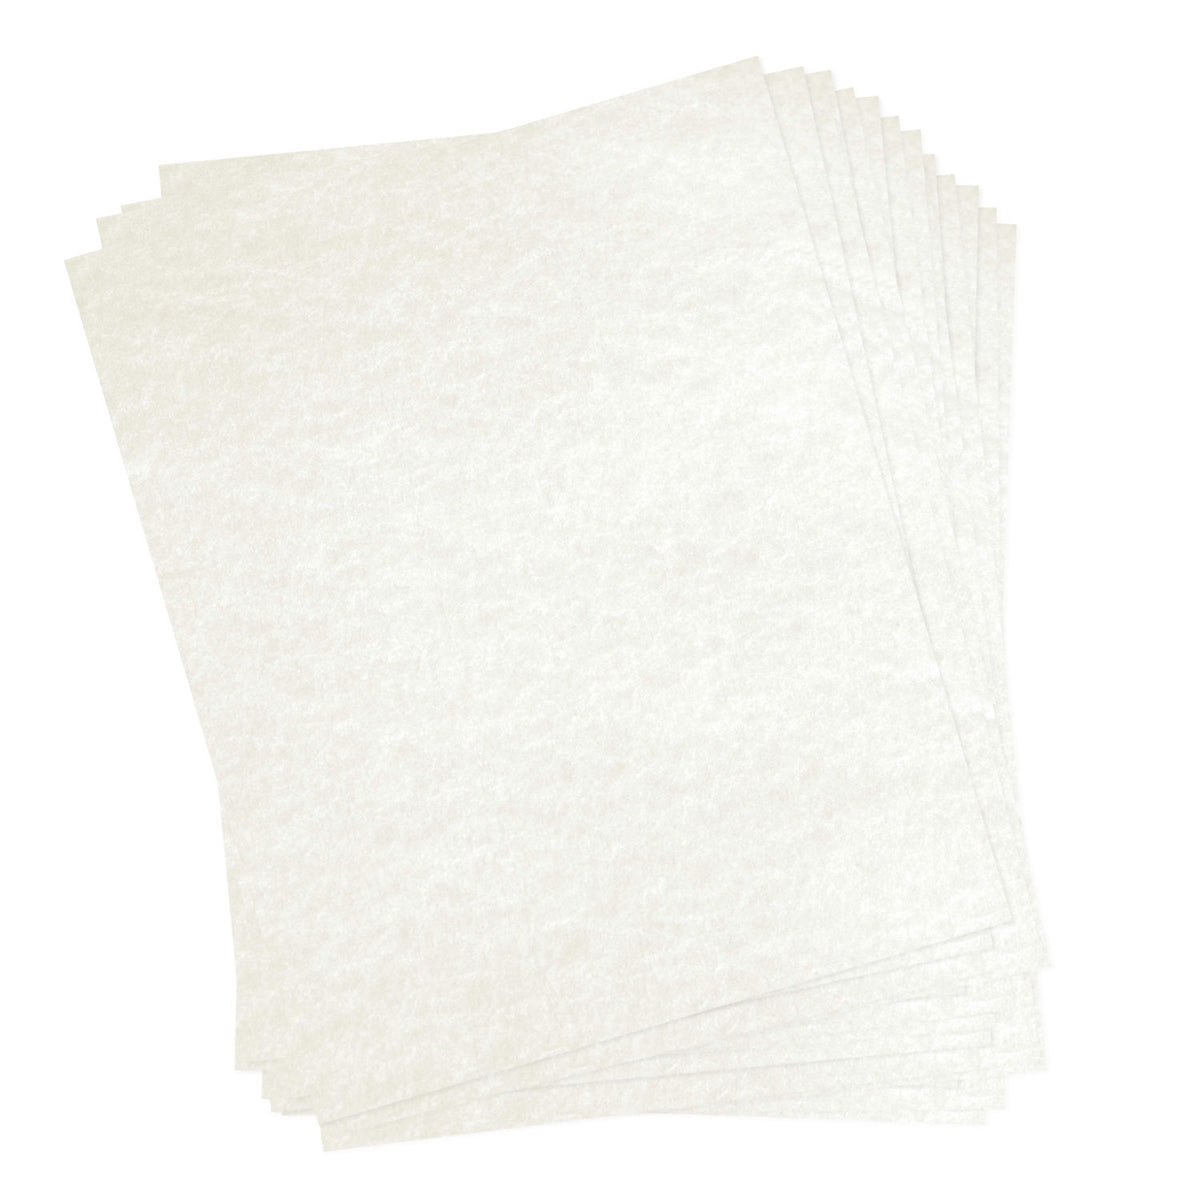 Dulytek 30-Sheet 12 x 14 Pre-Cut Extra Thick Parchment Paper